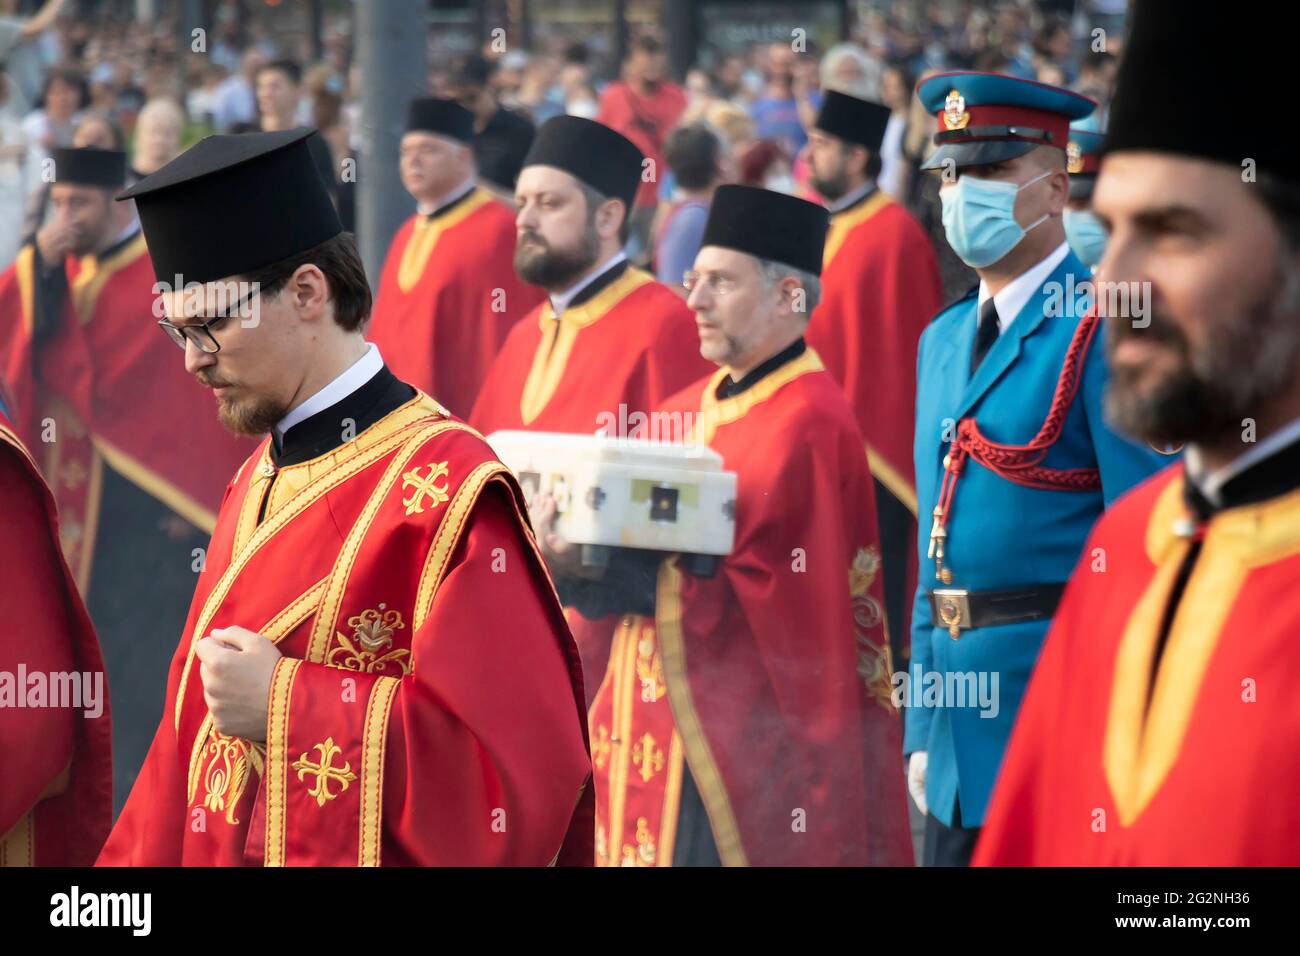 Belgrad, Serbien - 10. Juni 2021: Serbisch-orthodoxe Priester und bewaffnete Soldaten nehmen an einer religiösen Prozession Teil, um Belgrads Pat zu feiern Stockfoto